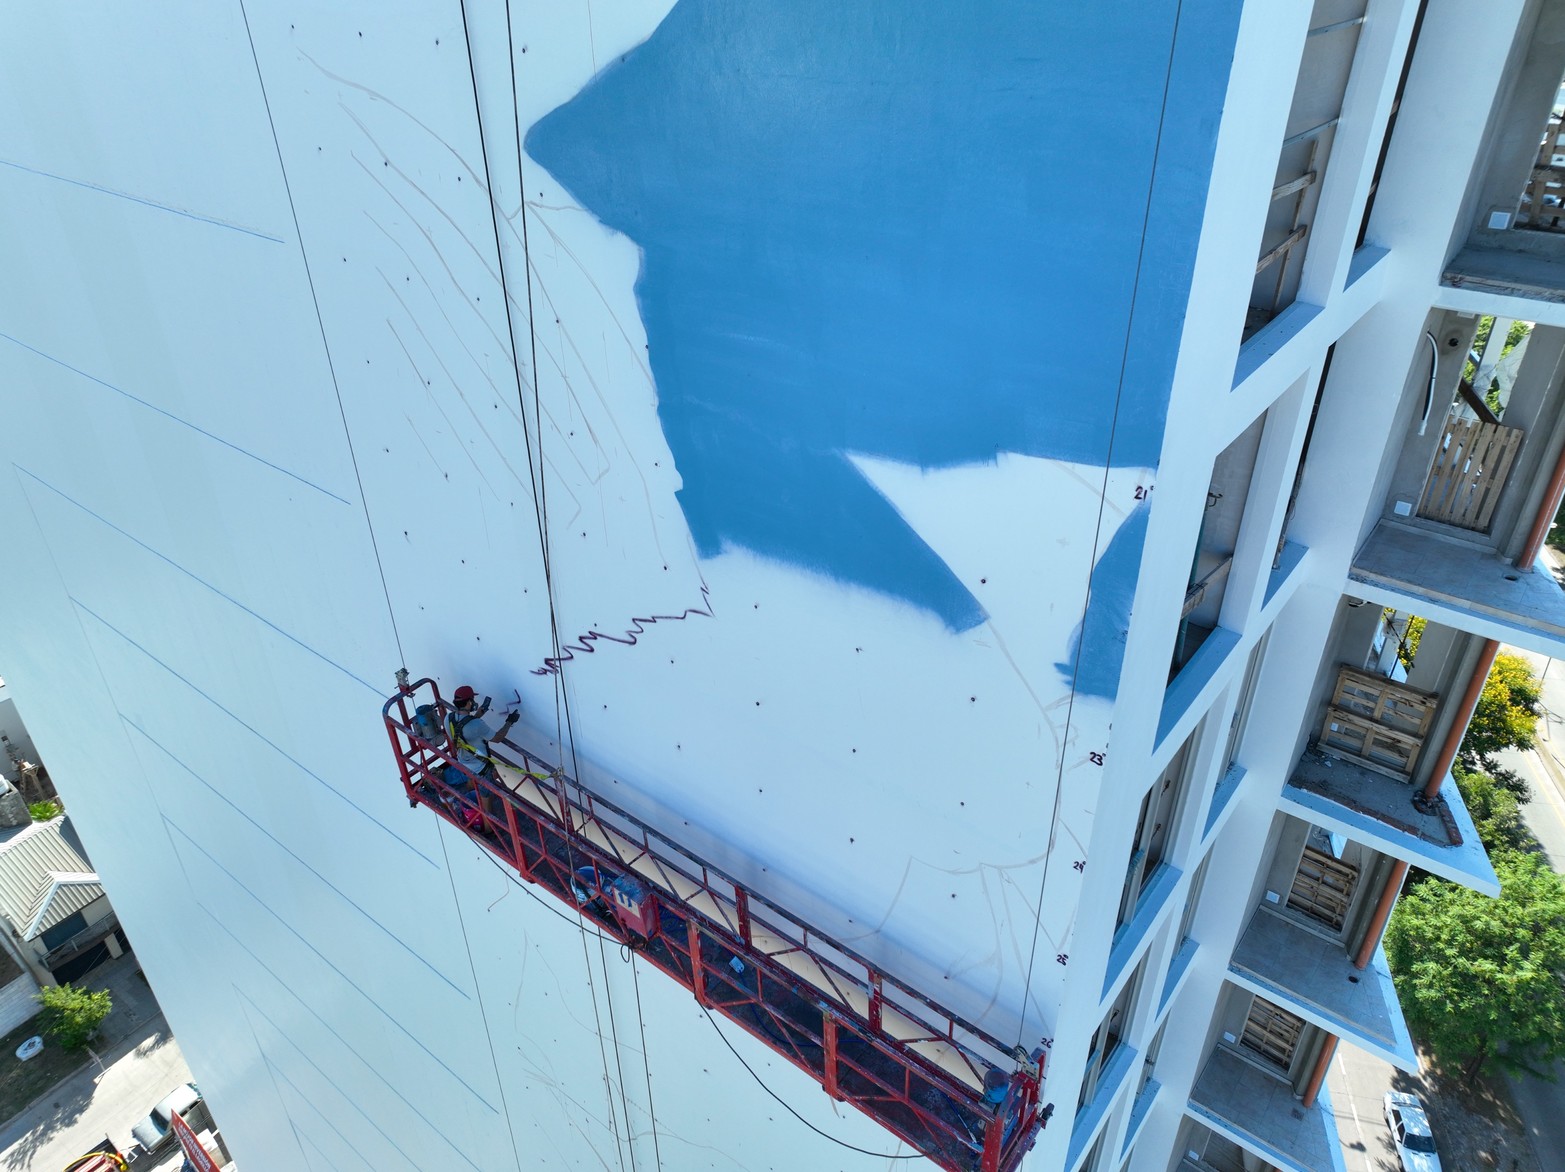 
La pintura tendrá 75 metros de alto por 40 mts, donde está la parte más ancha.